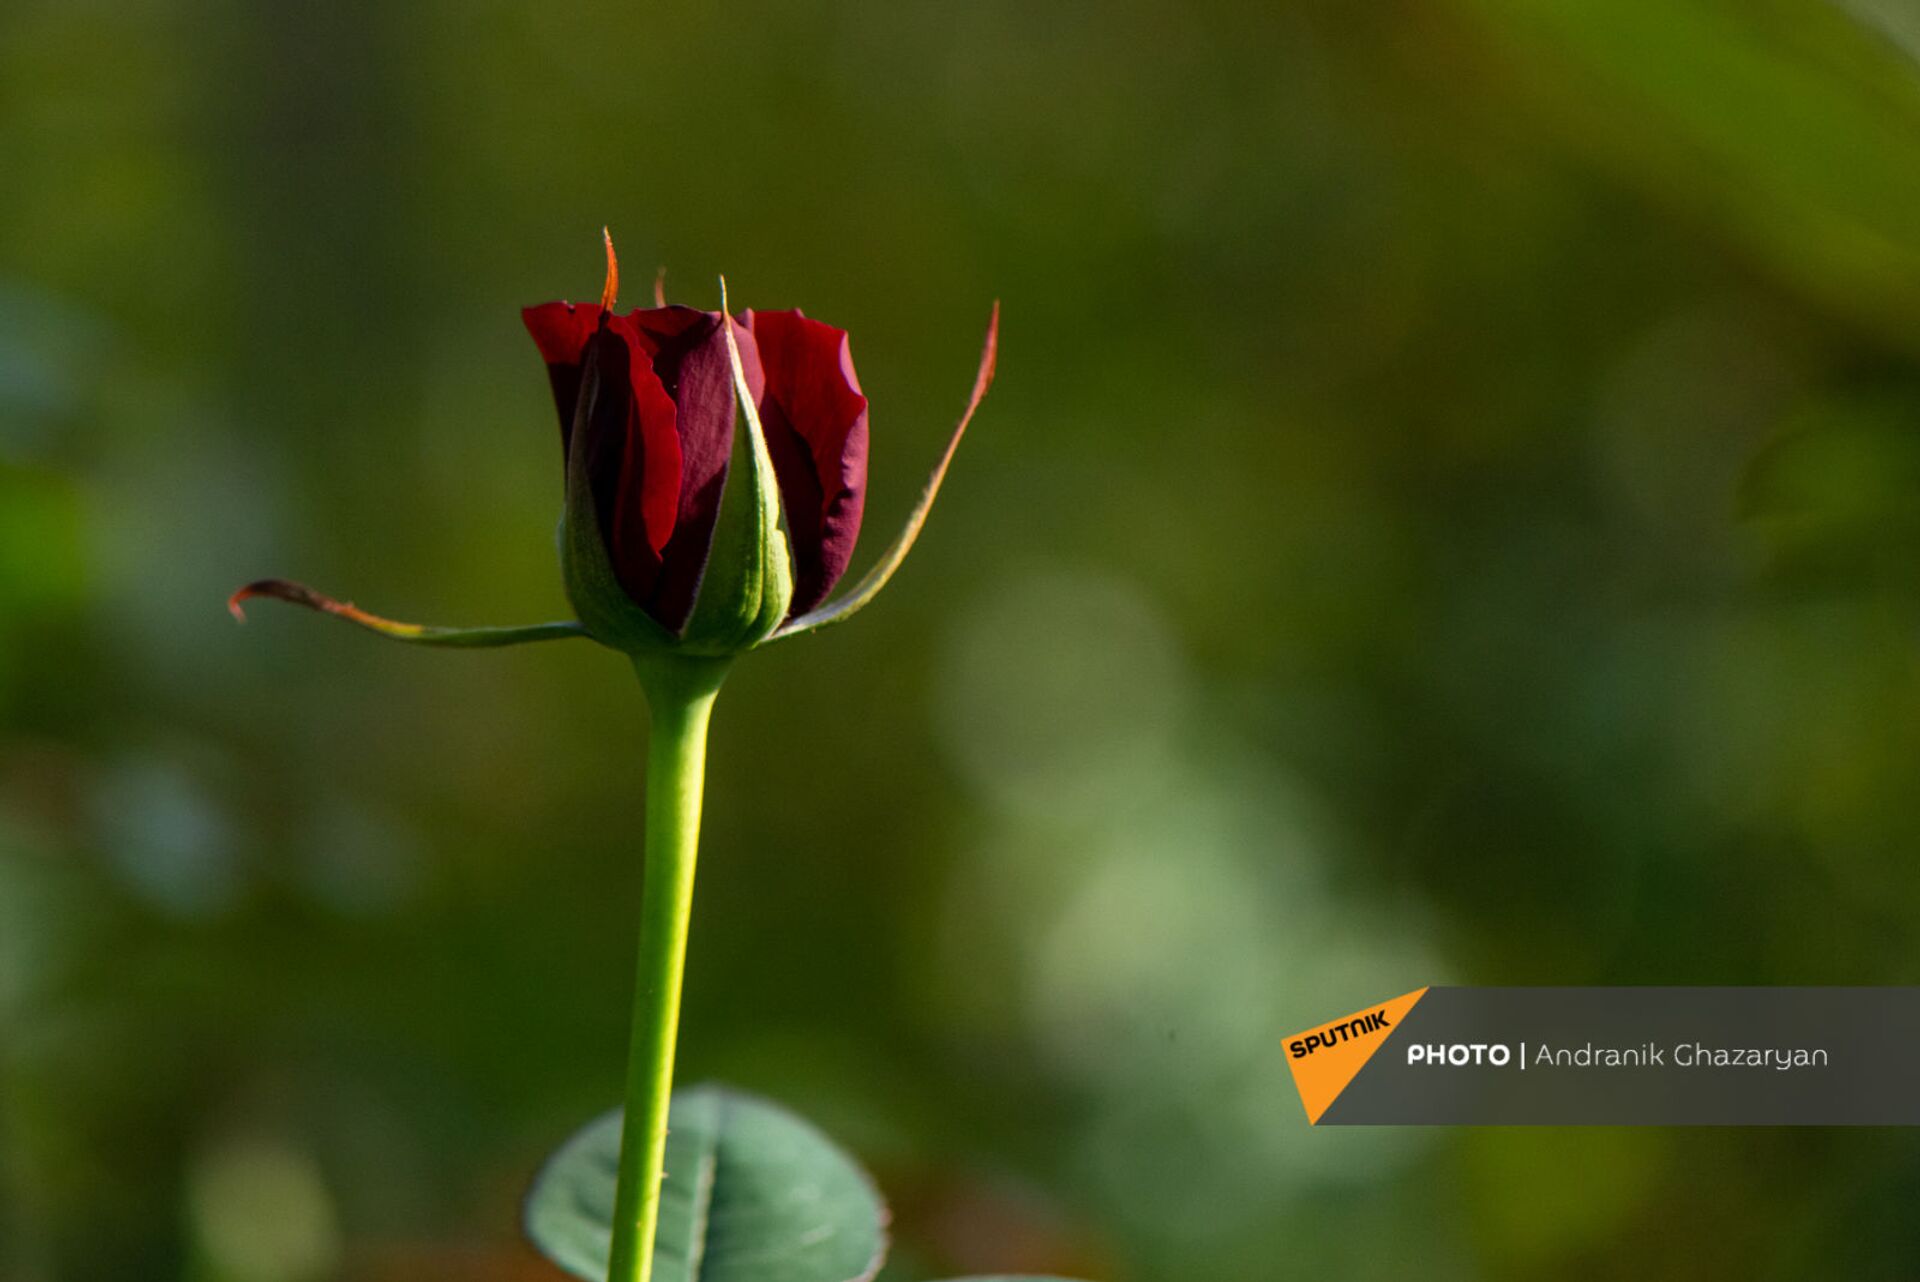 Цветочнице цветы не дарят, или Кто покупает полуармянские розы - Sputnik Армения, 1920, 08.03.2021